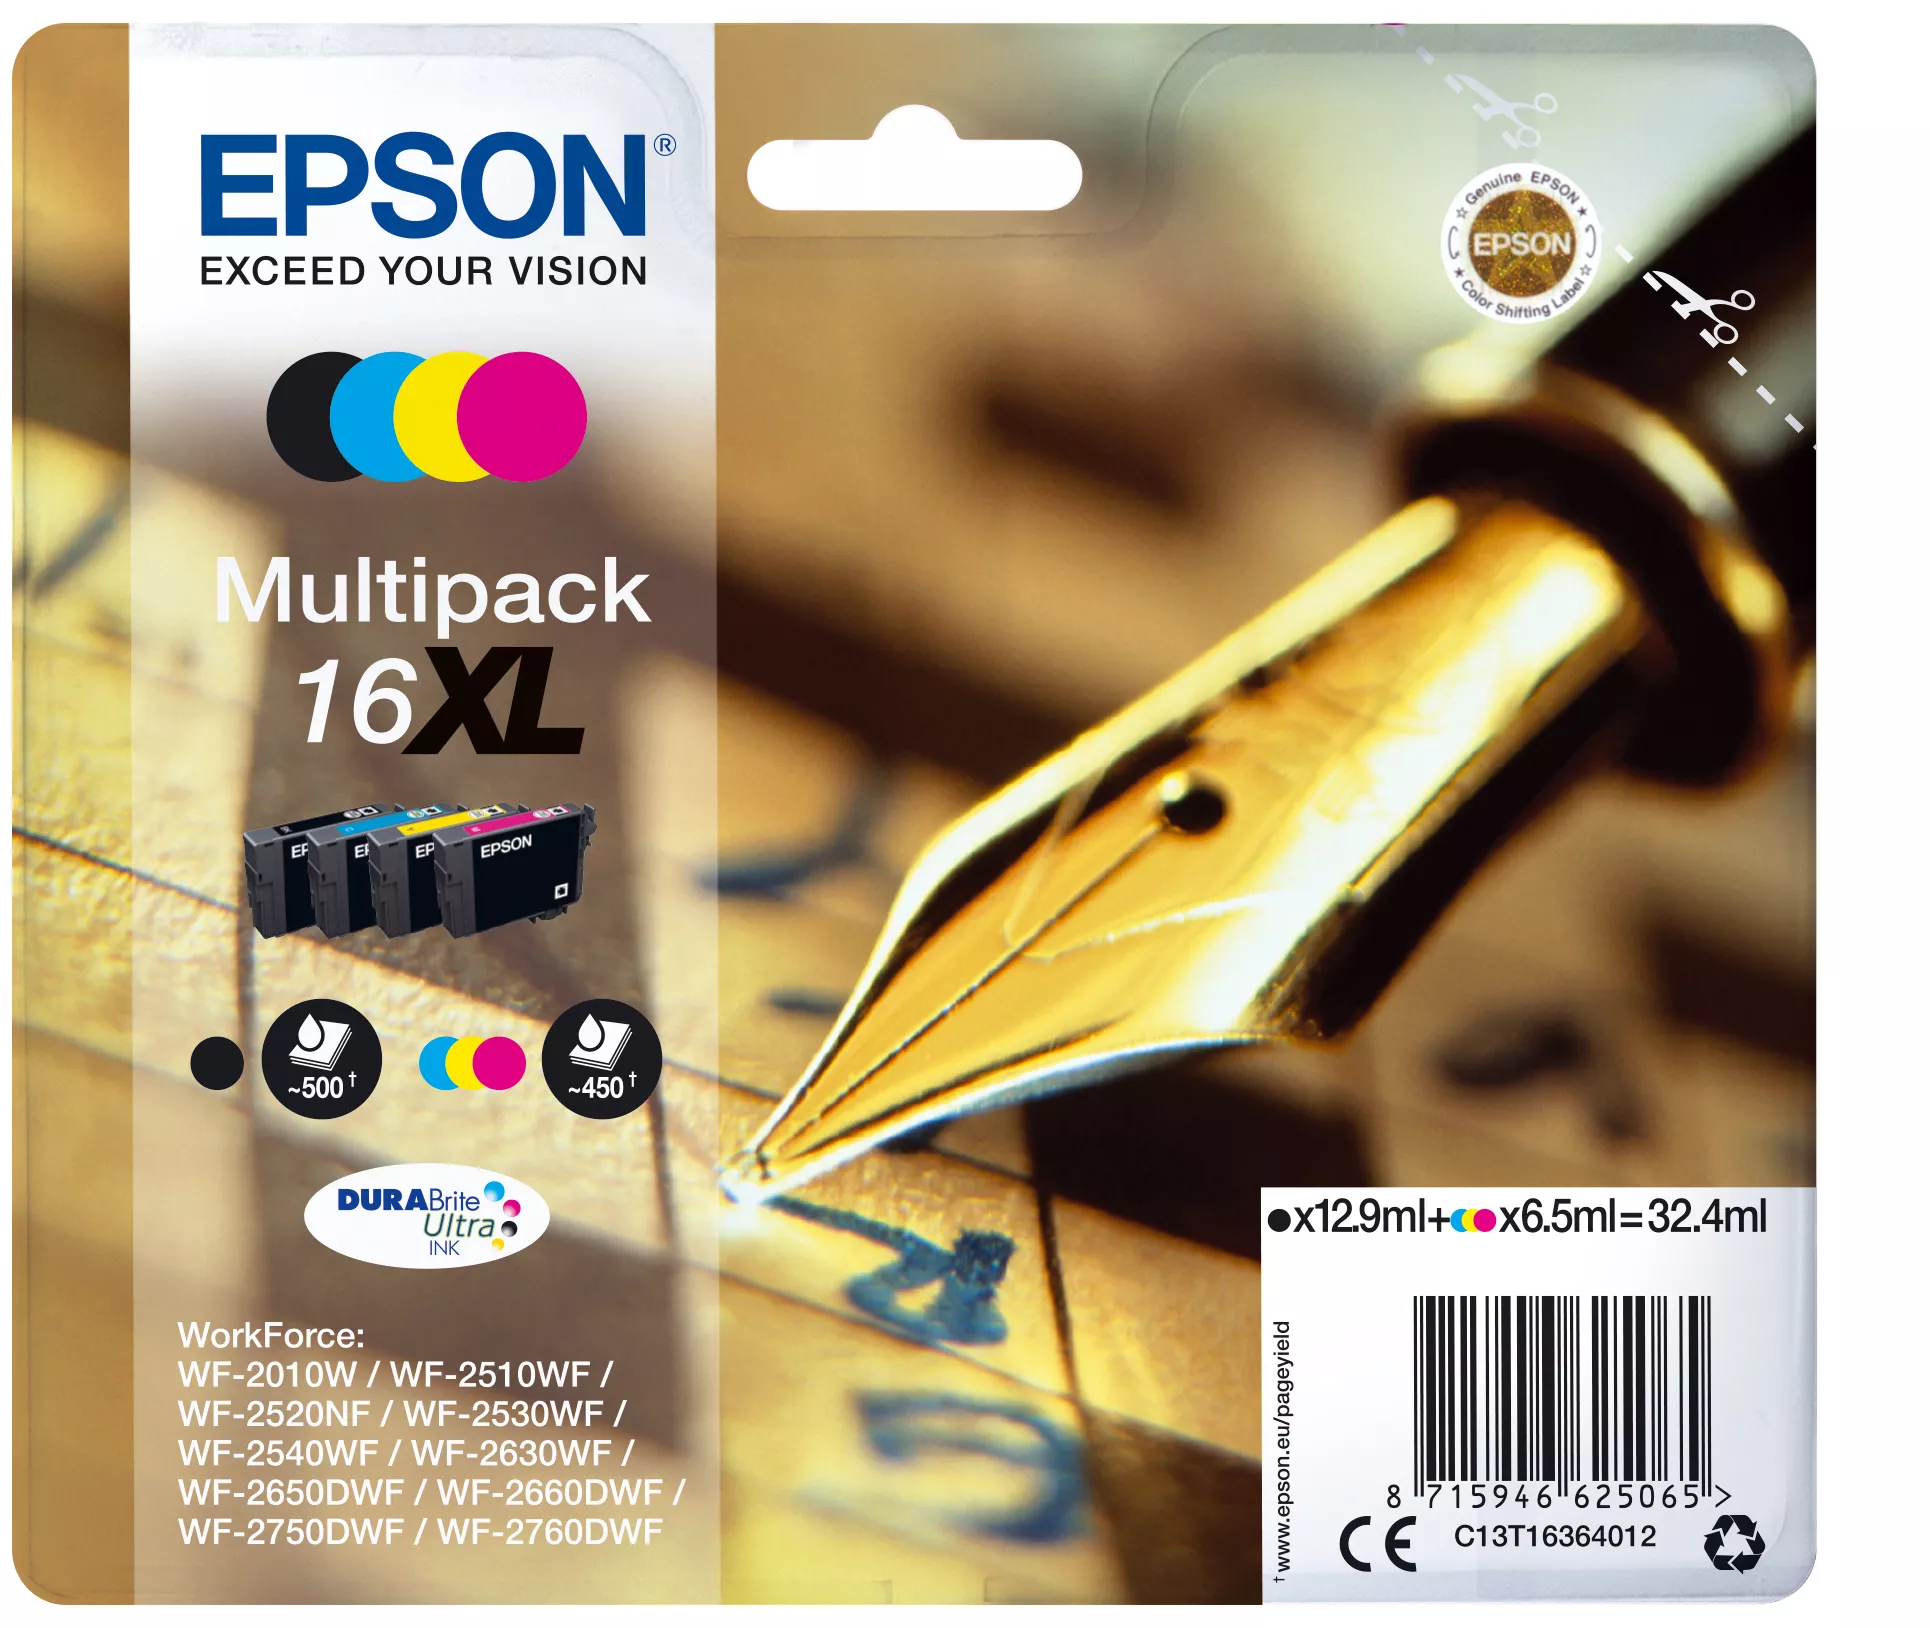 Achat EPSON 16XL cartouche encre noir et tricolore haute capacité et autres produits de la marque Epson